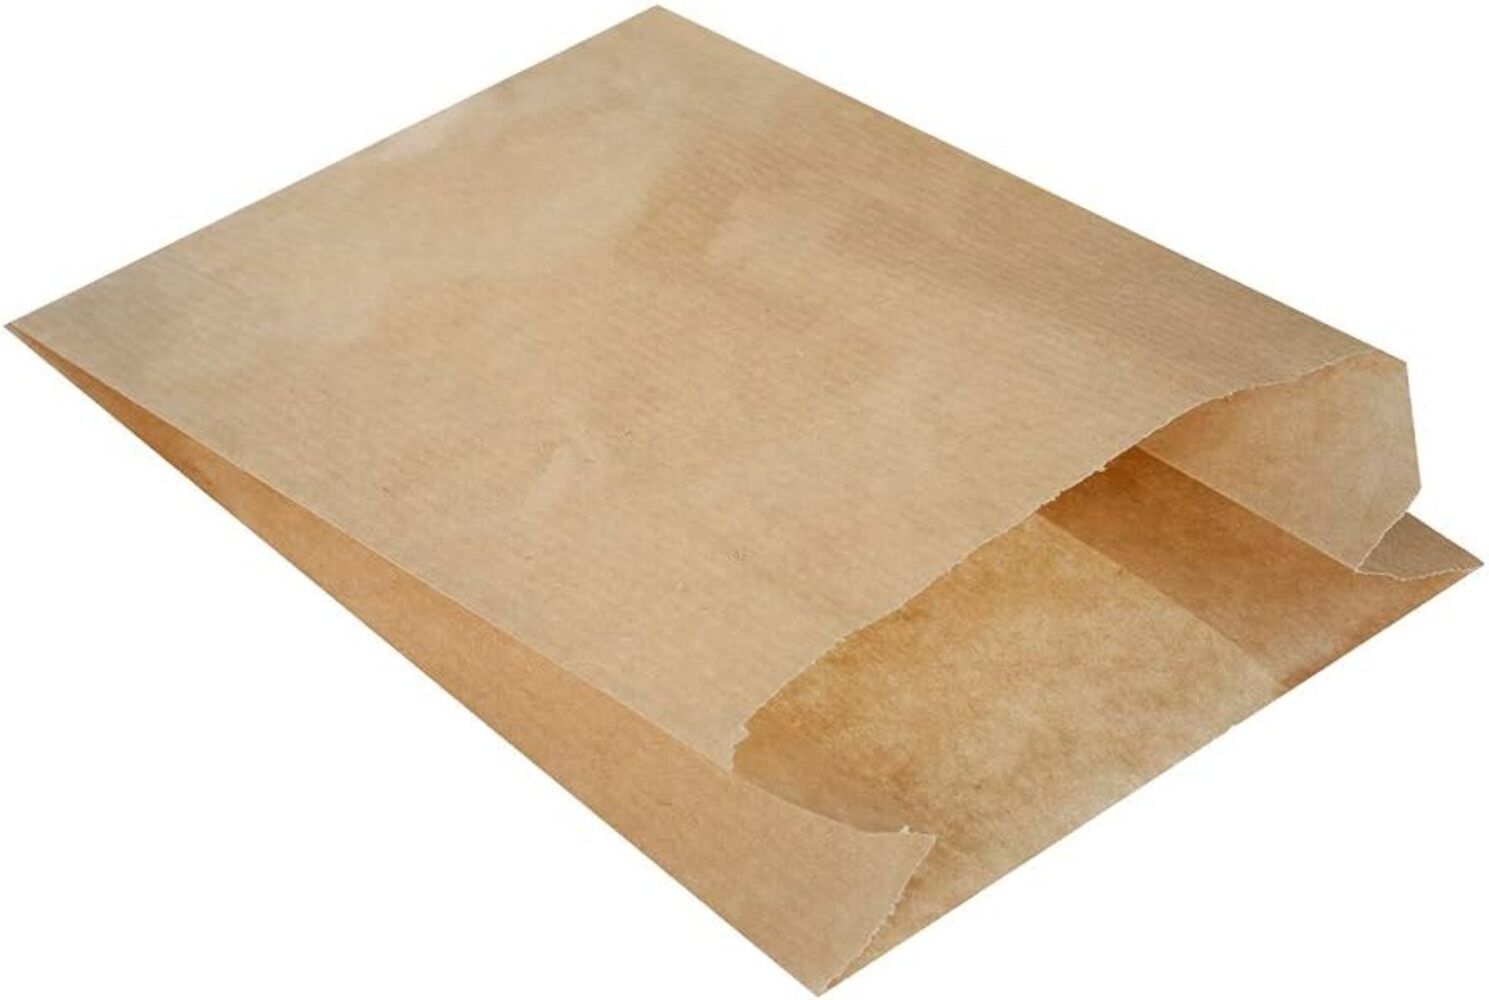 Kraft (Şamua) Dipsiz Kese Kağıdı 15*24 cm 500 gr. Gramaj